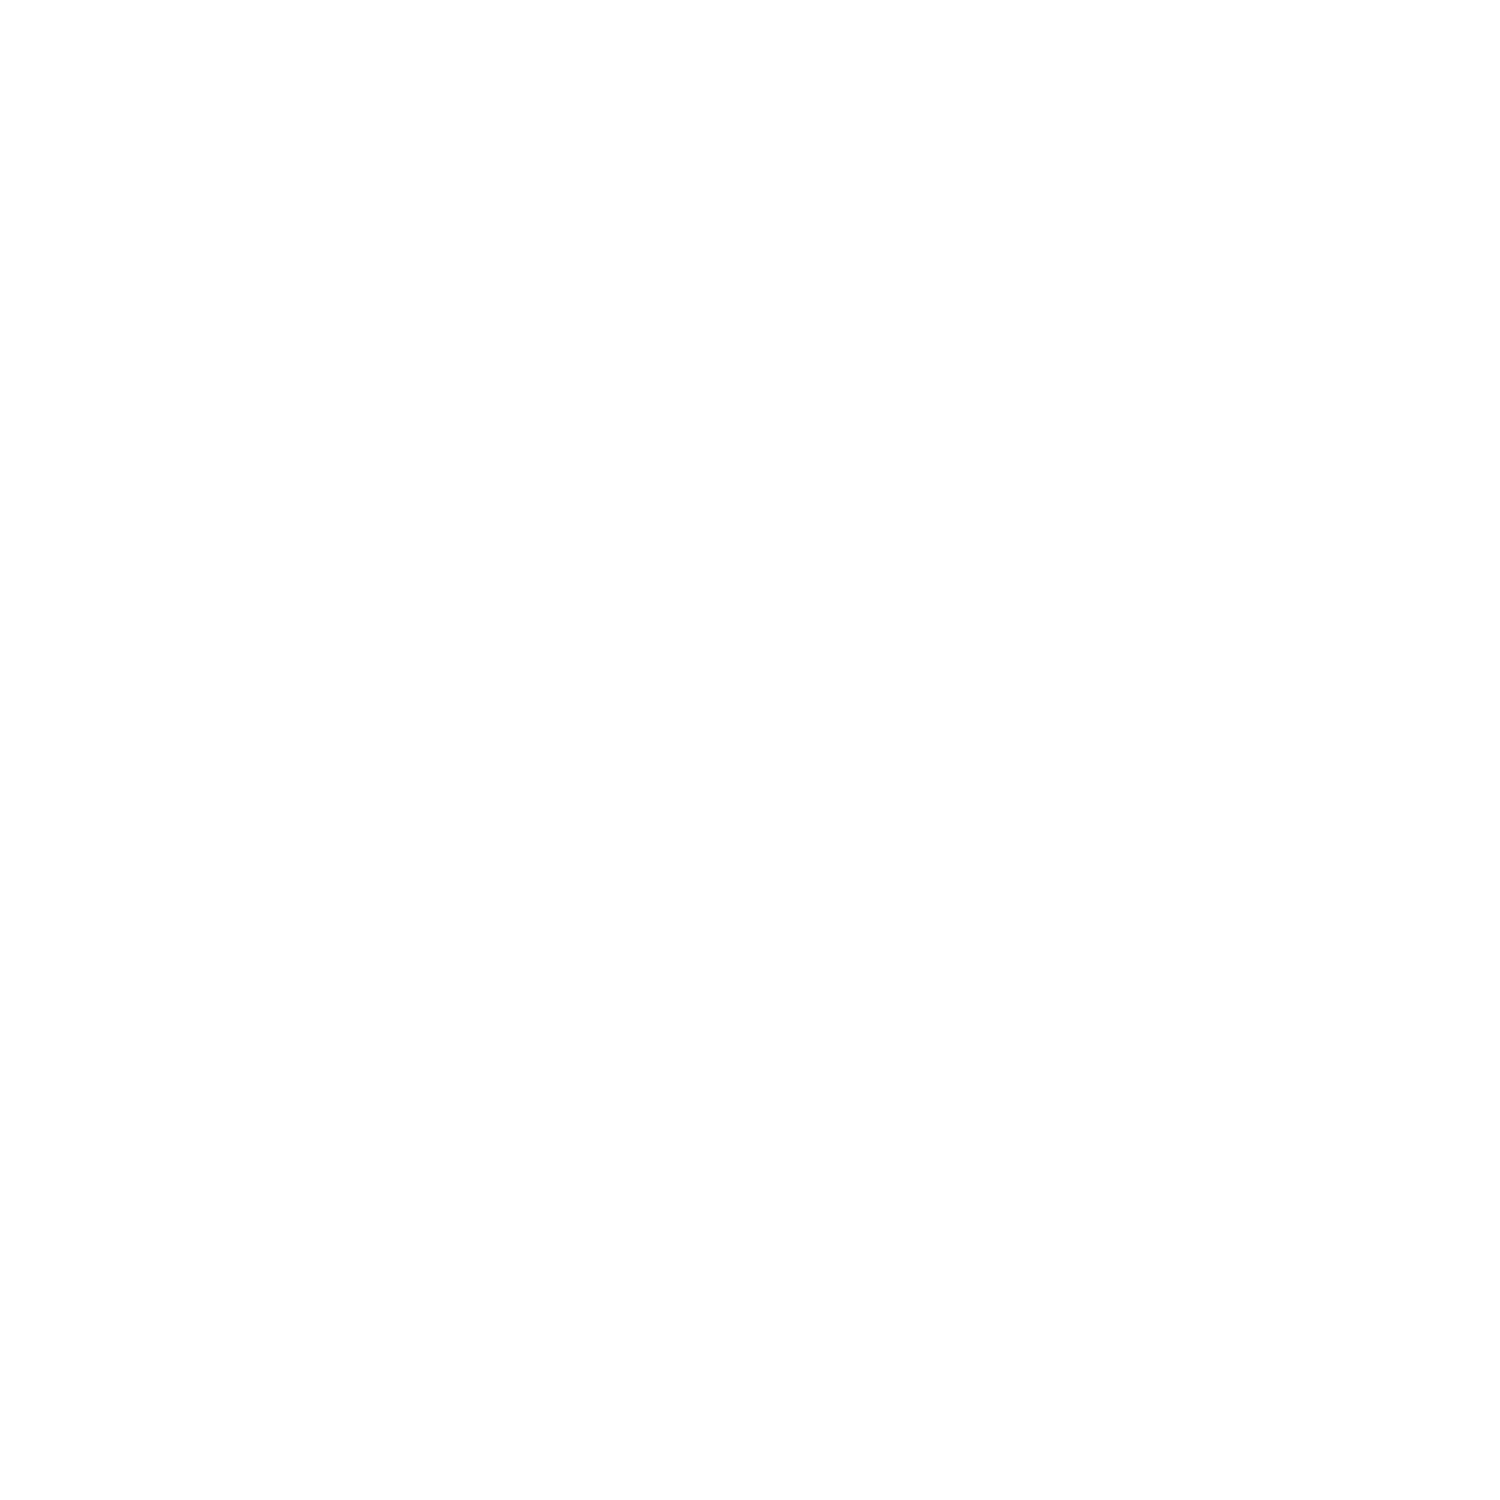 Shaq Anthony